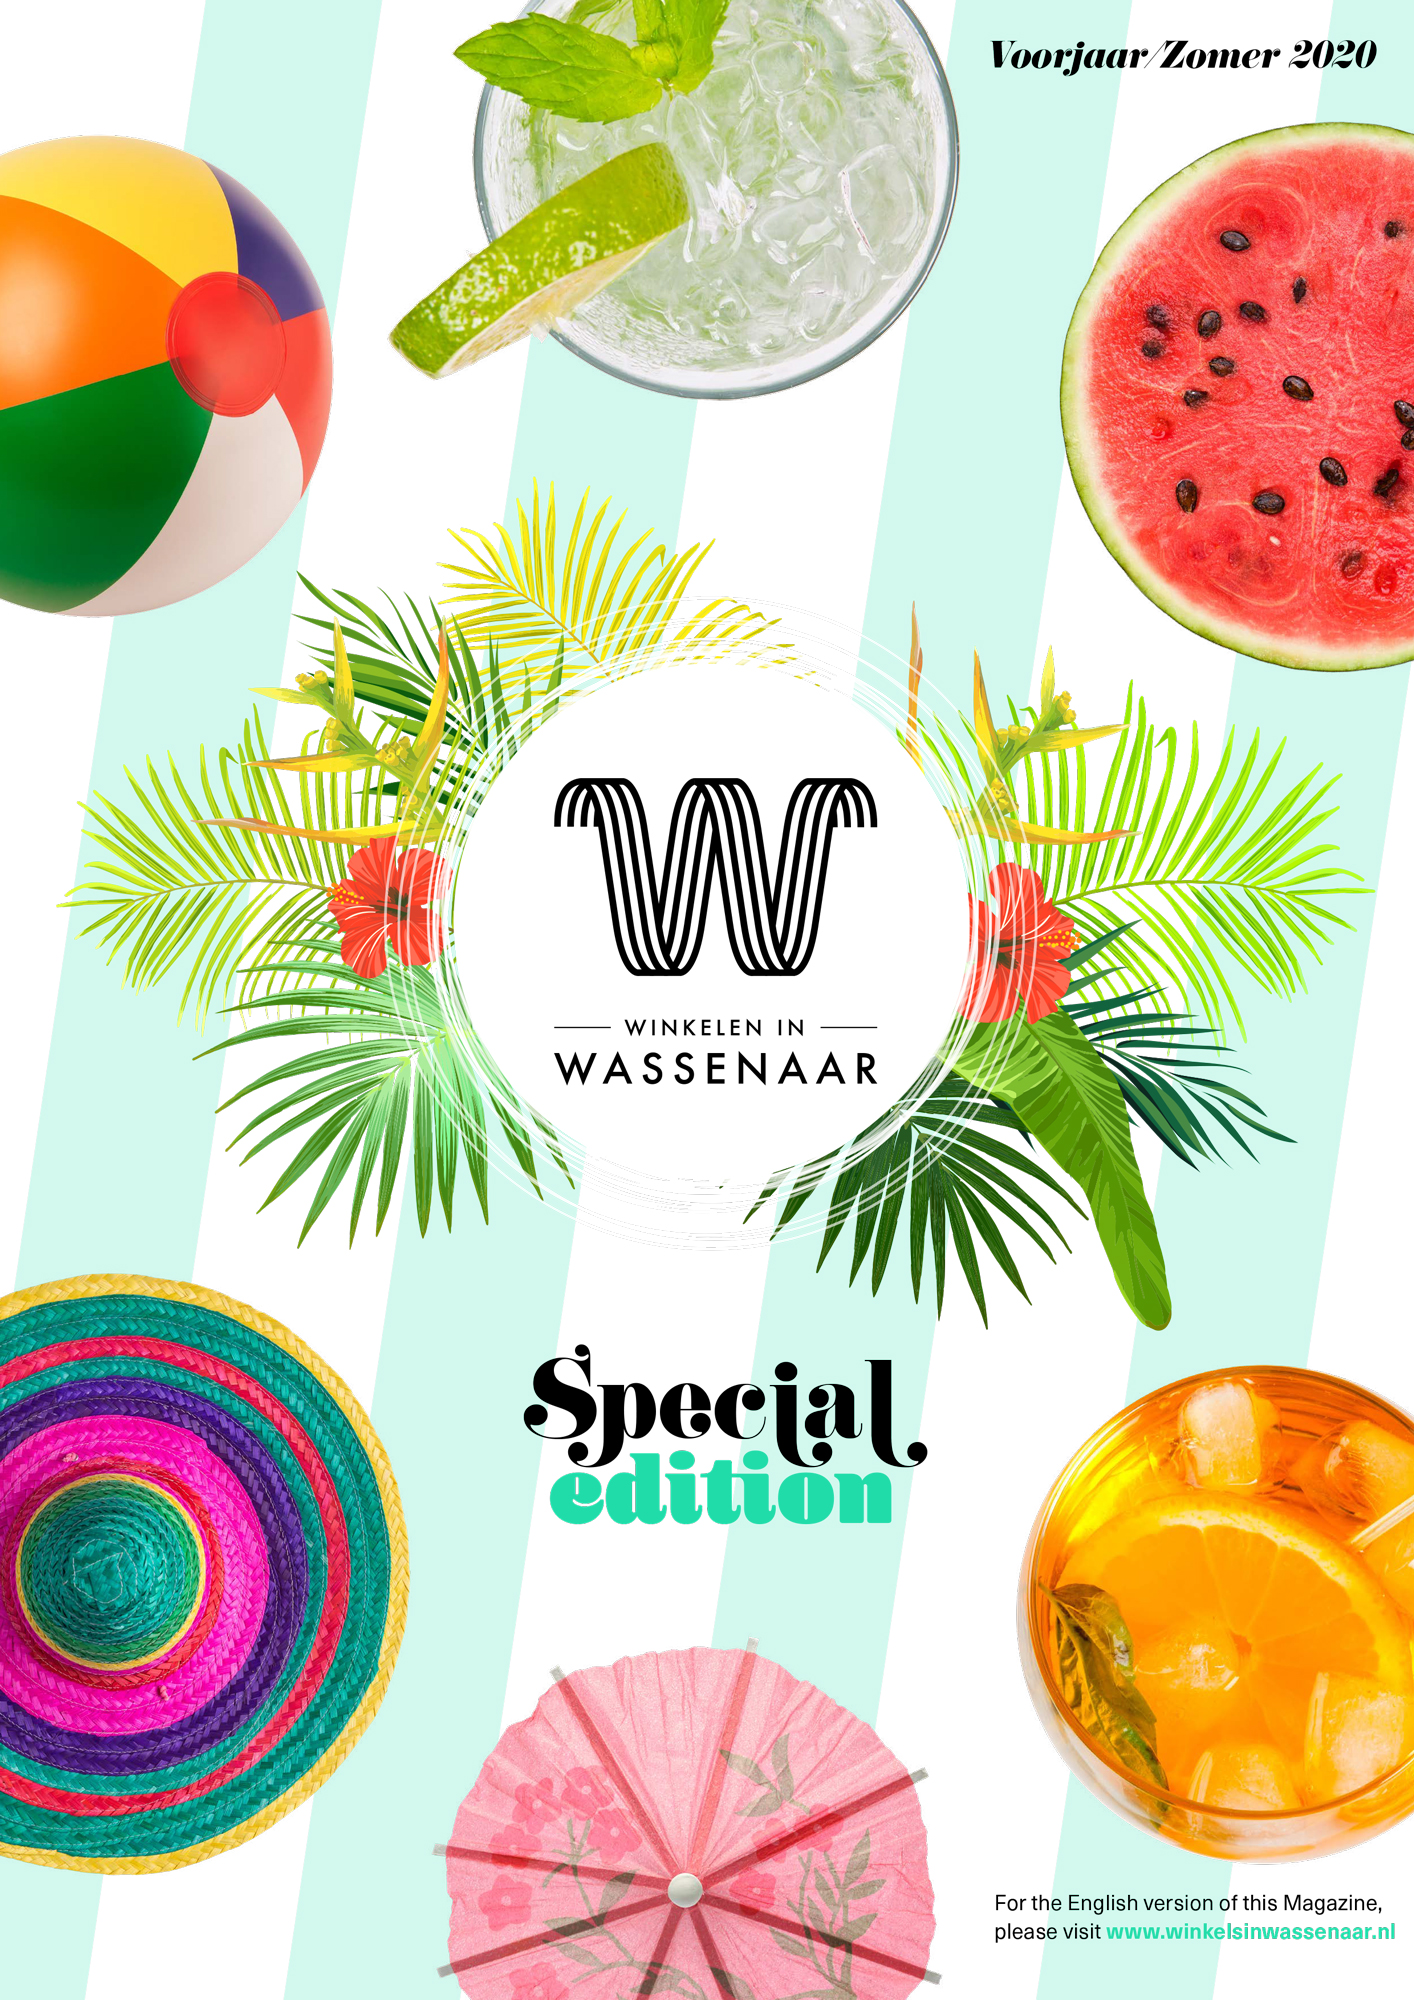 Winkelen in Wassenaar – Special Edition